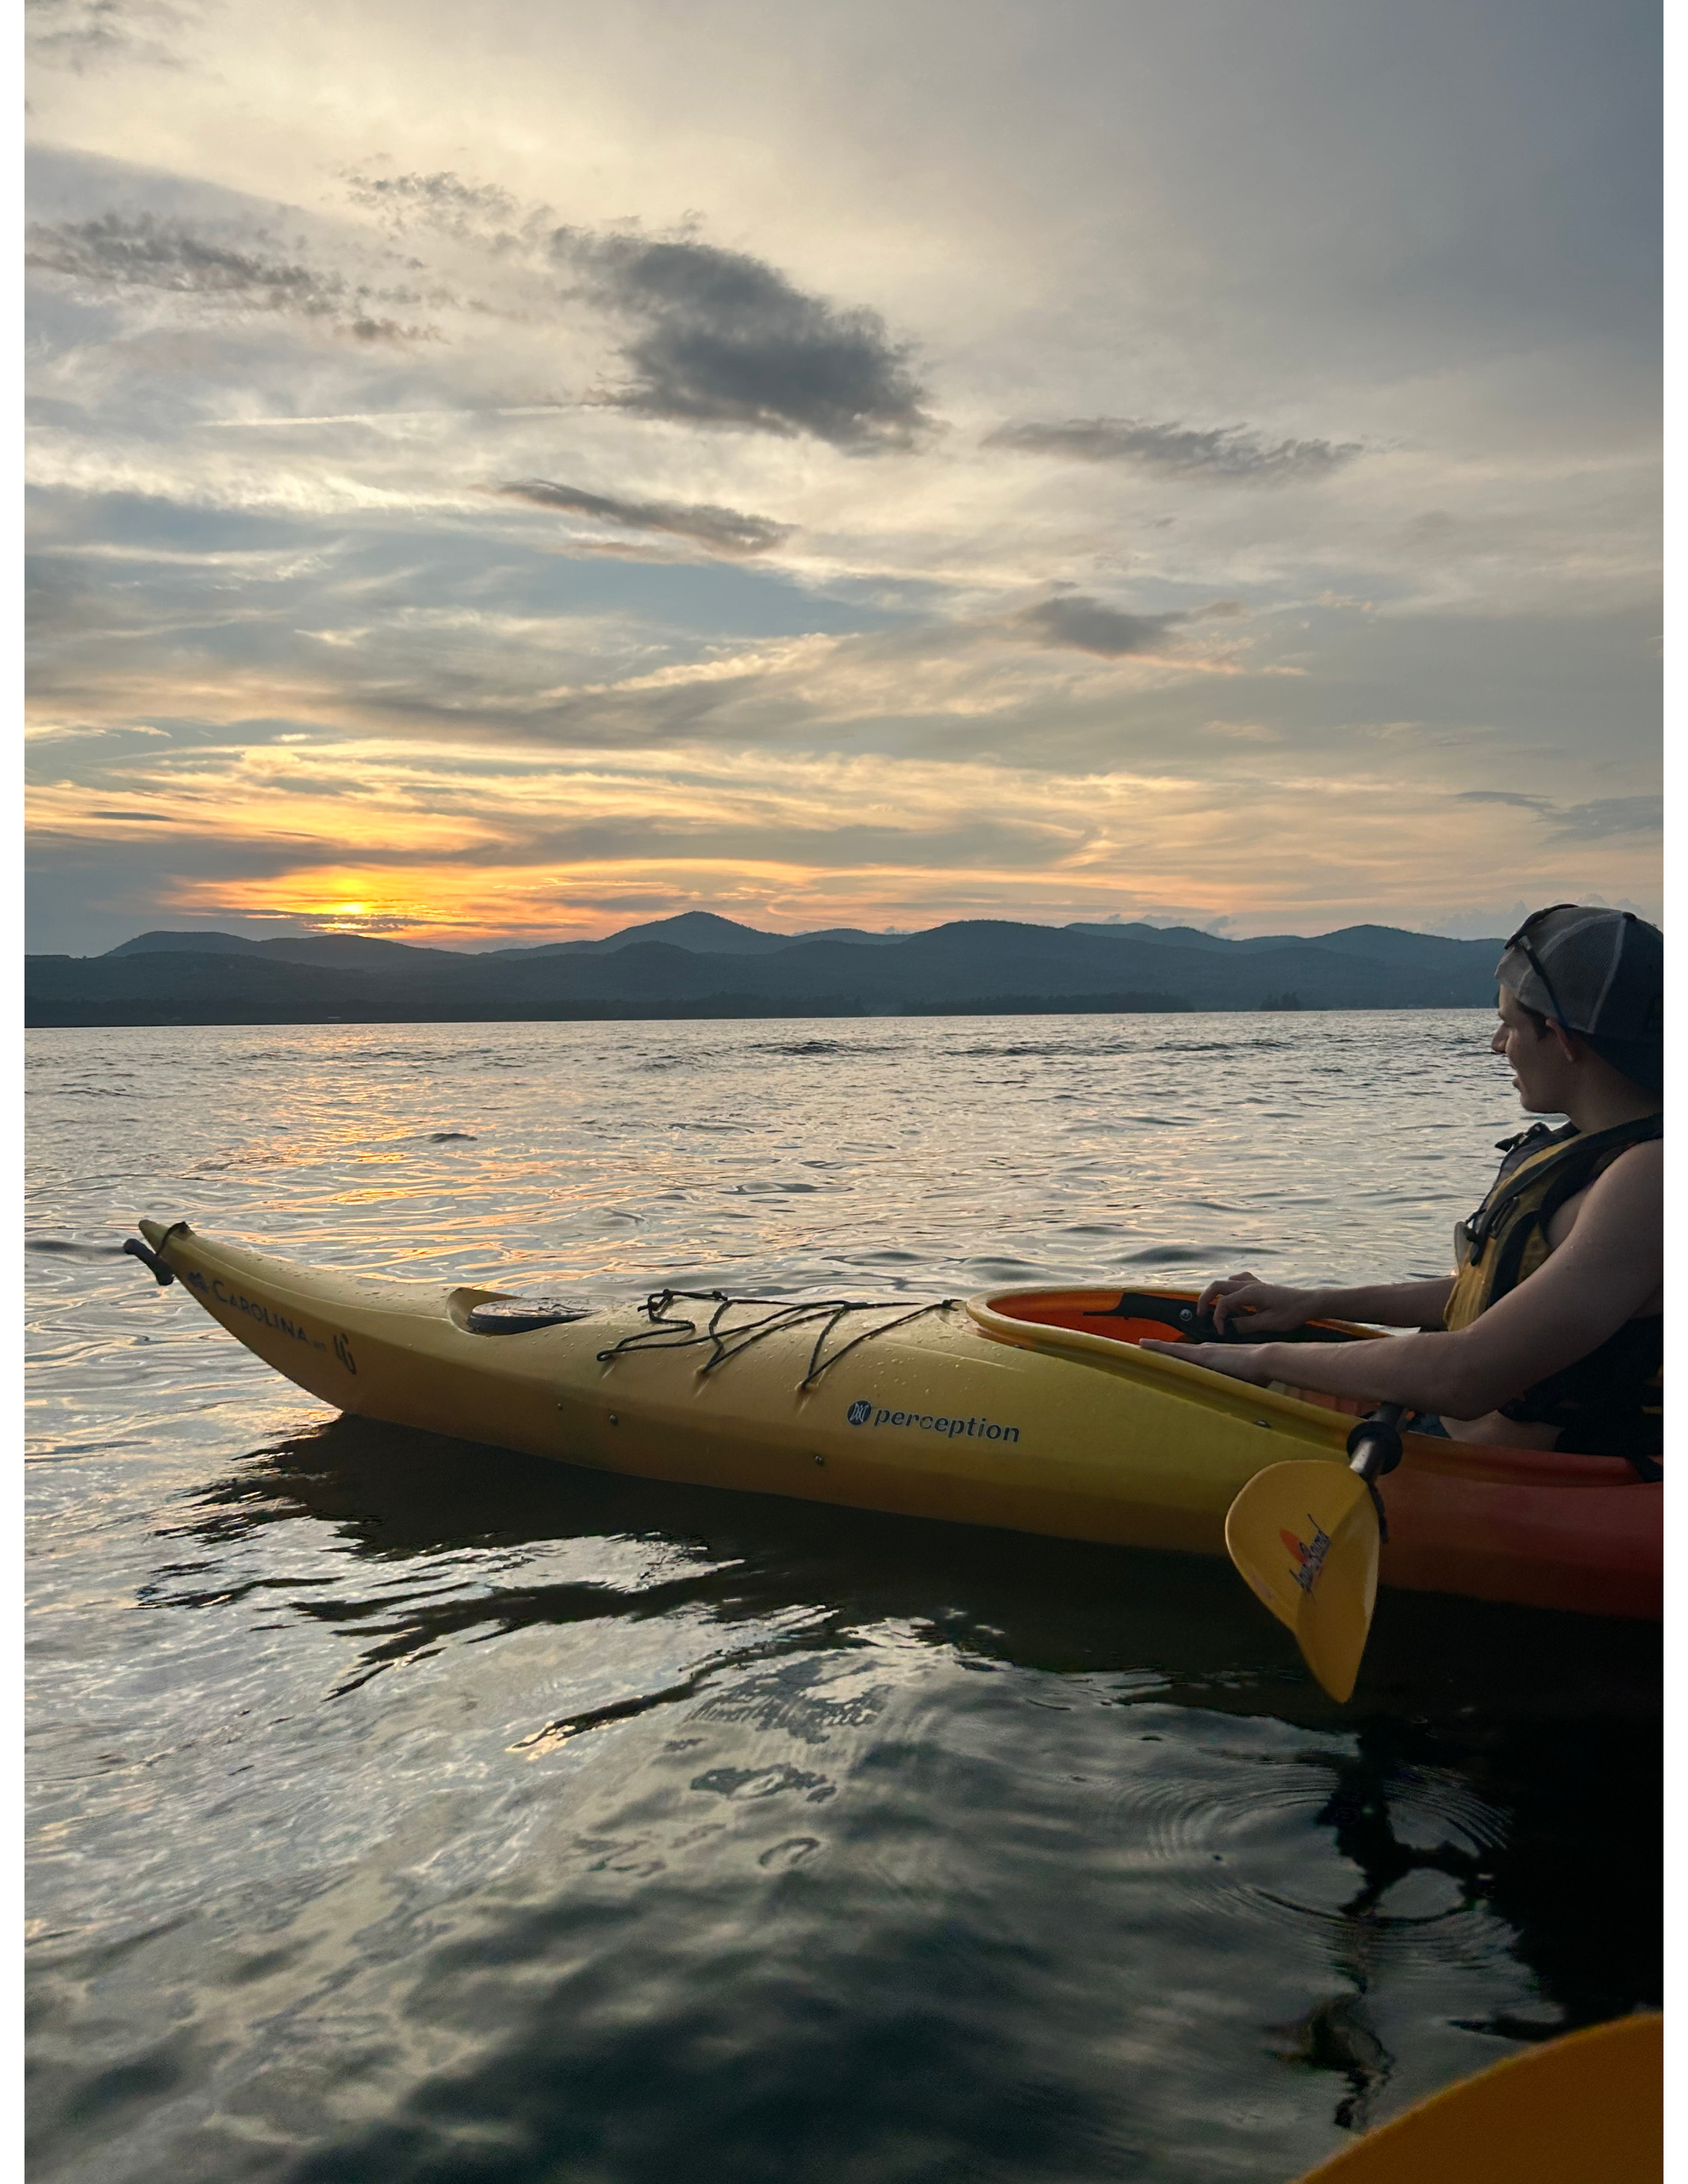 Michael kayaking on Lake George